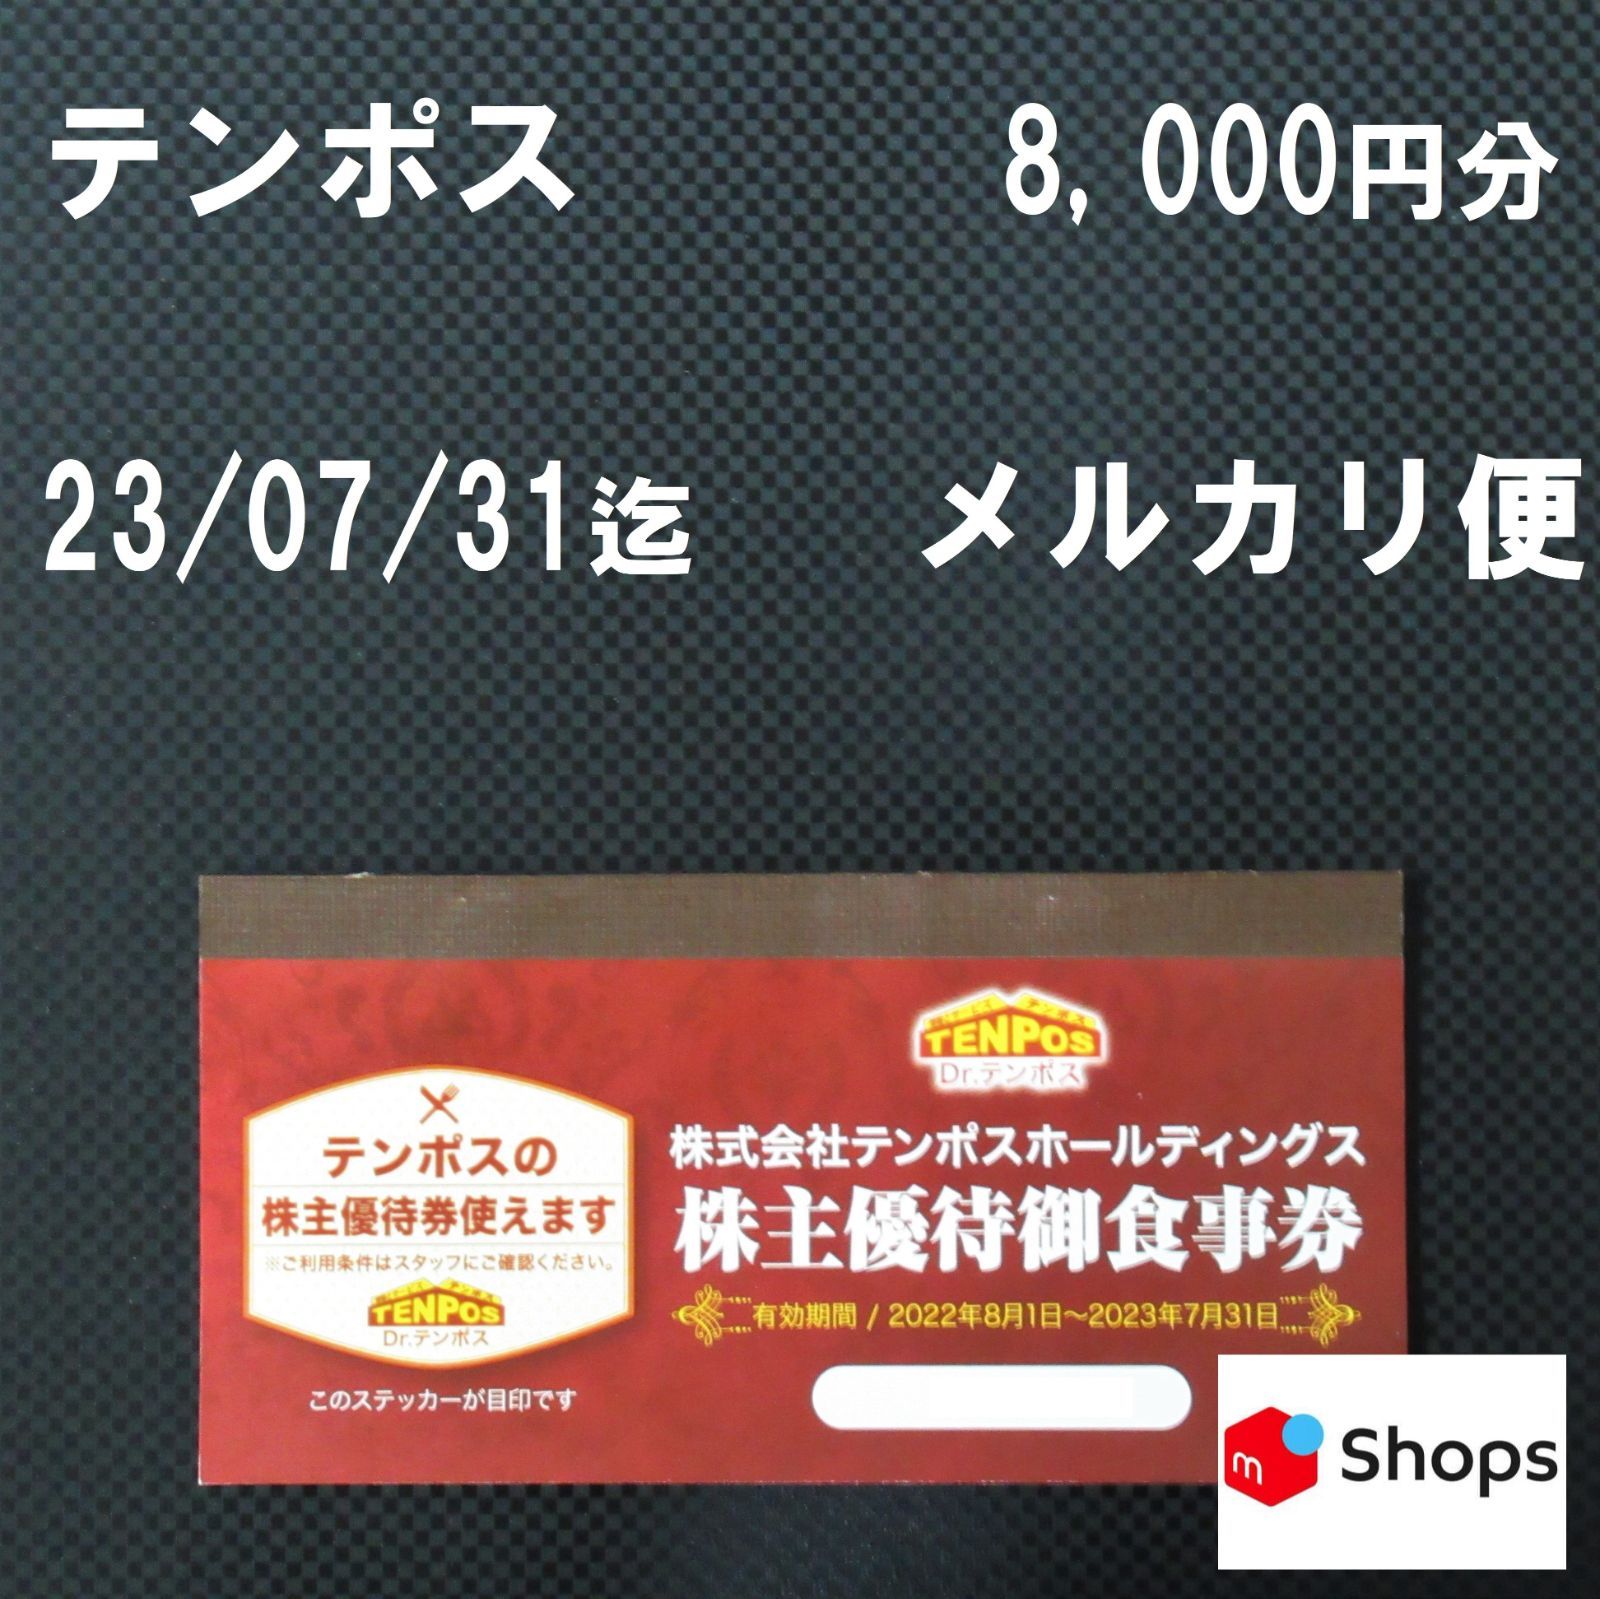 テンポス株主優待8000円分